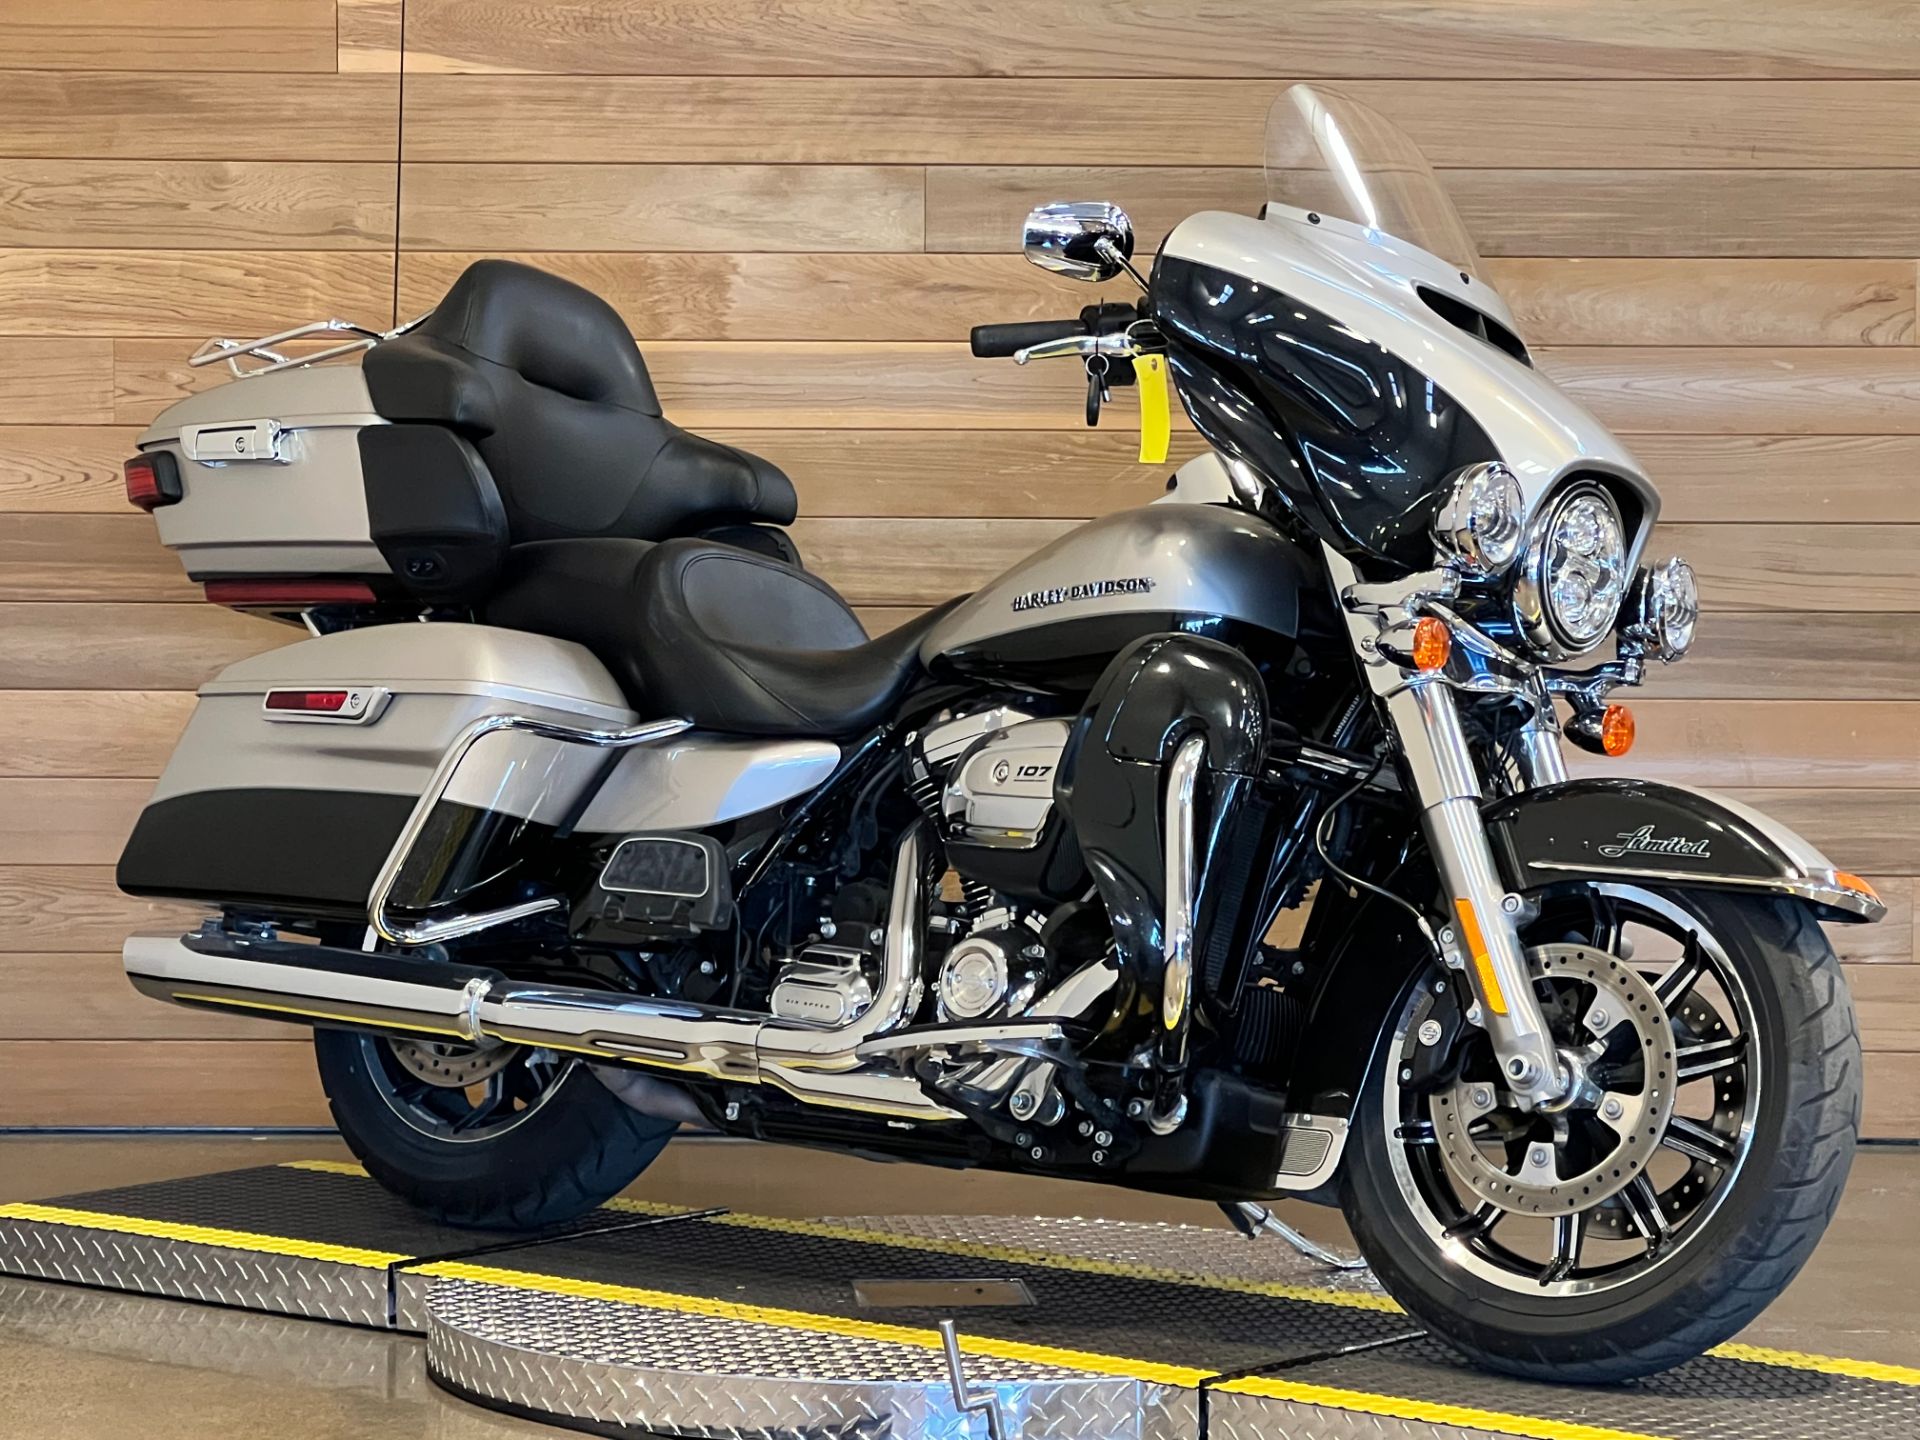 2018 Harley-Davidson Ultra Limited in Salem, Oregon - Photo 2